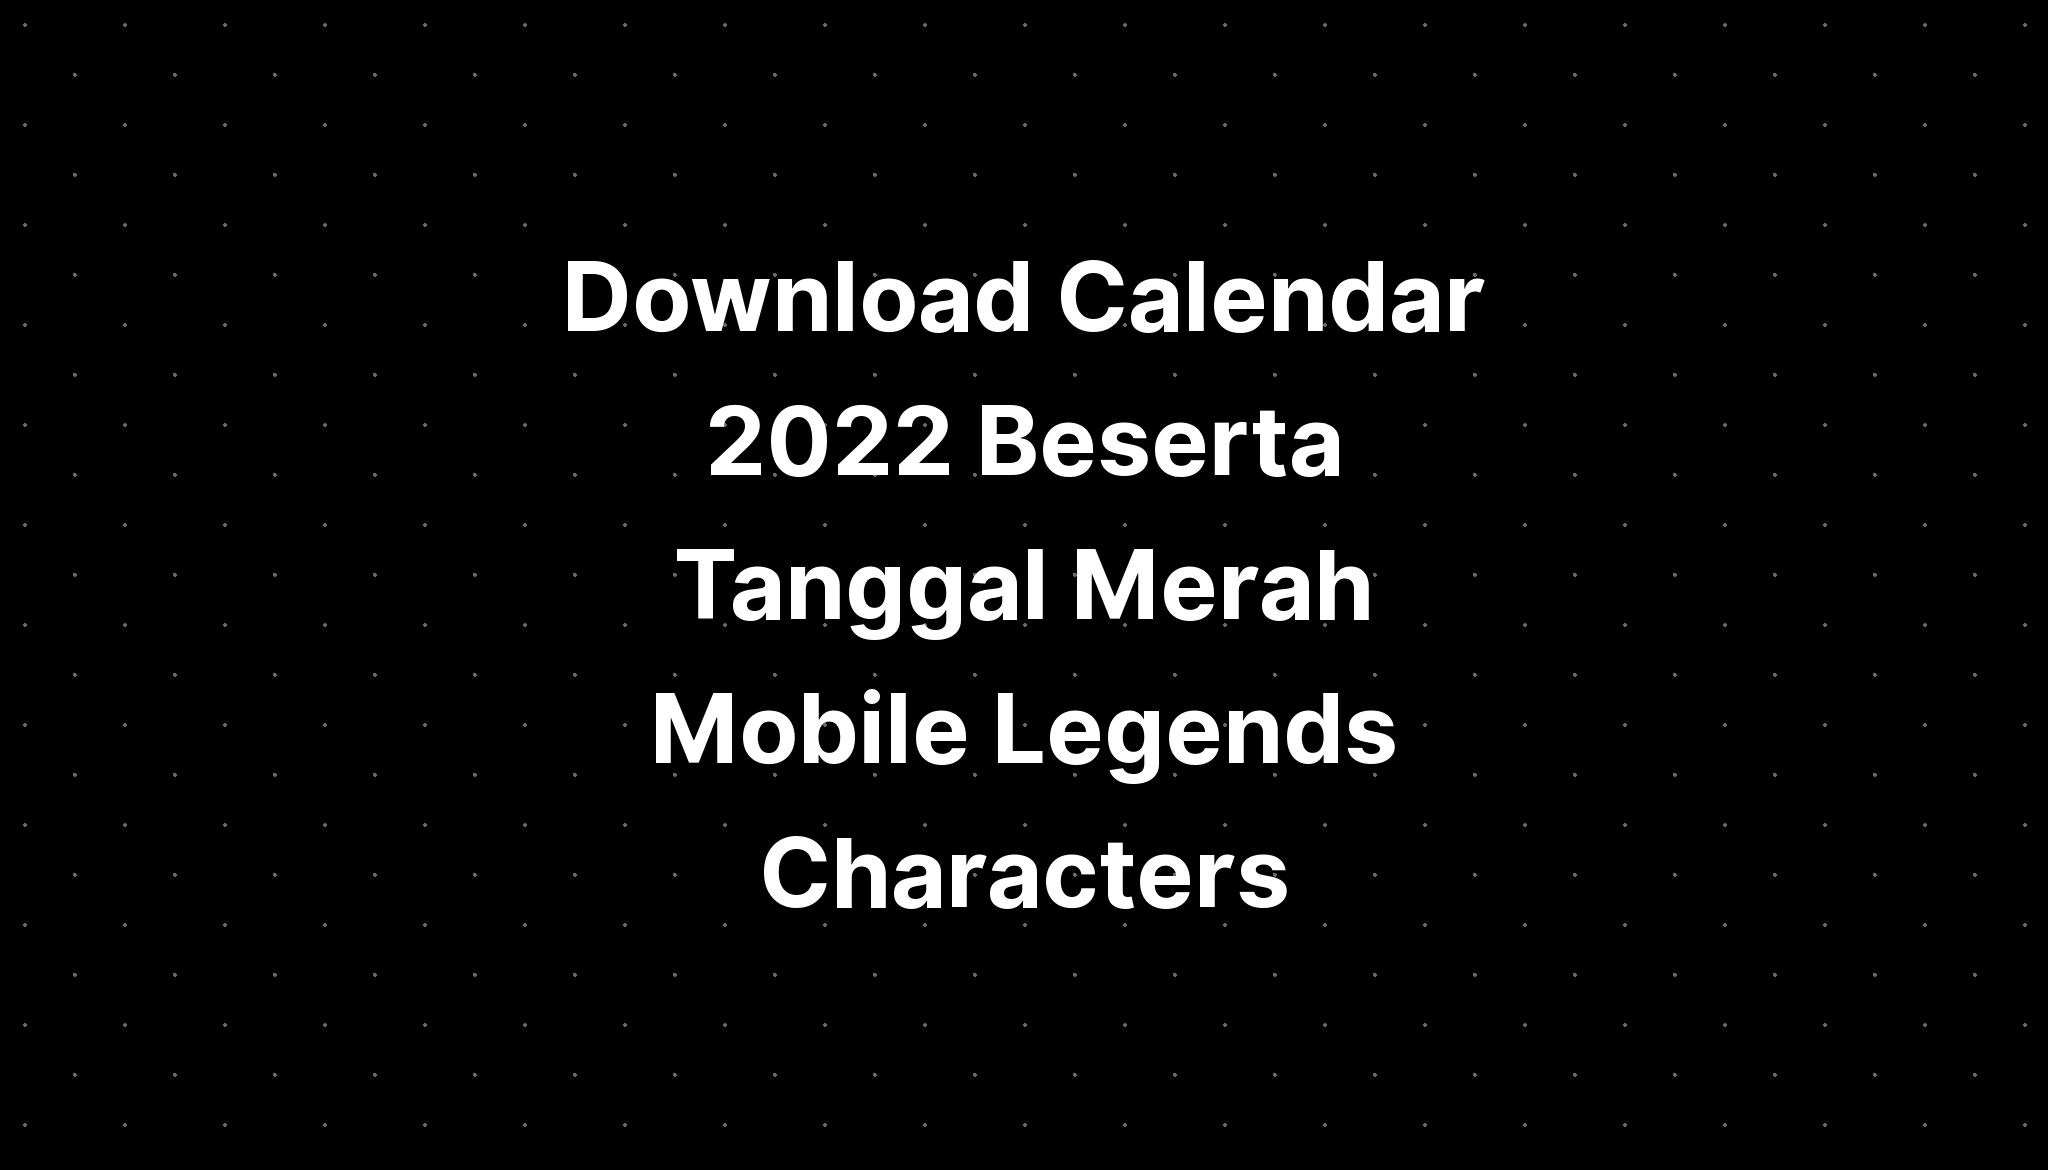 Download Calendar 2022 Beserta Tanggal Merah Mobile Legends Characters